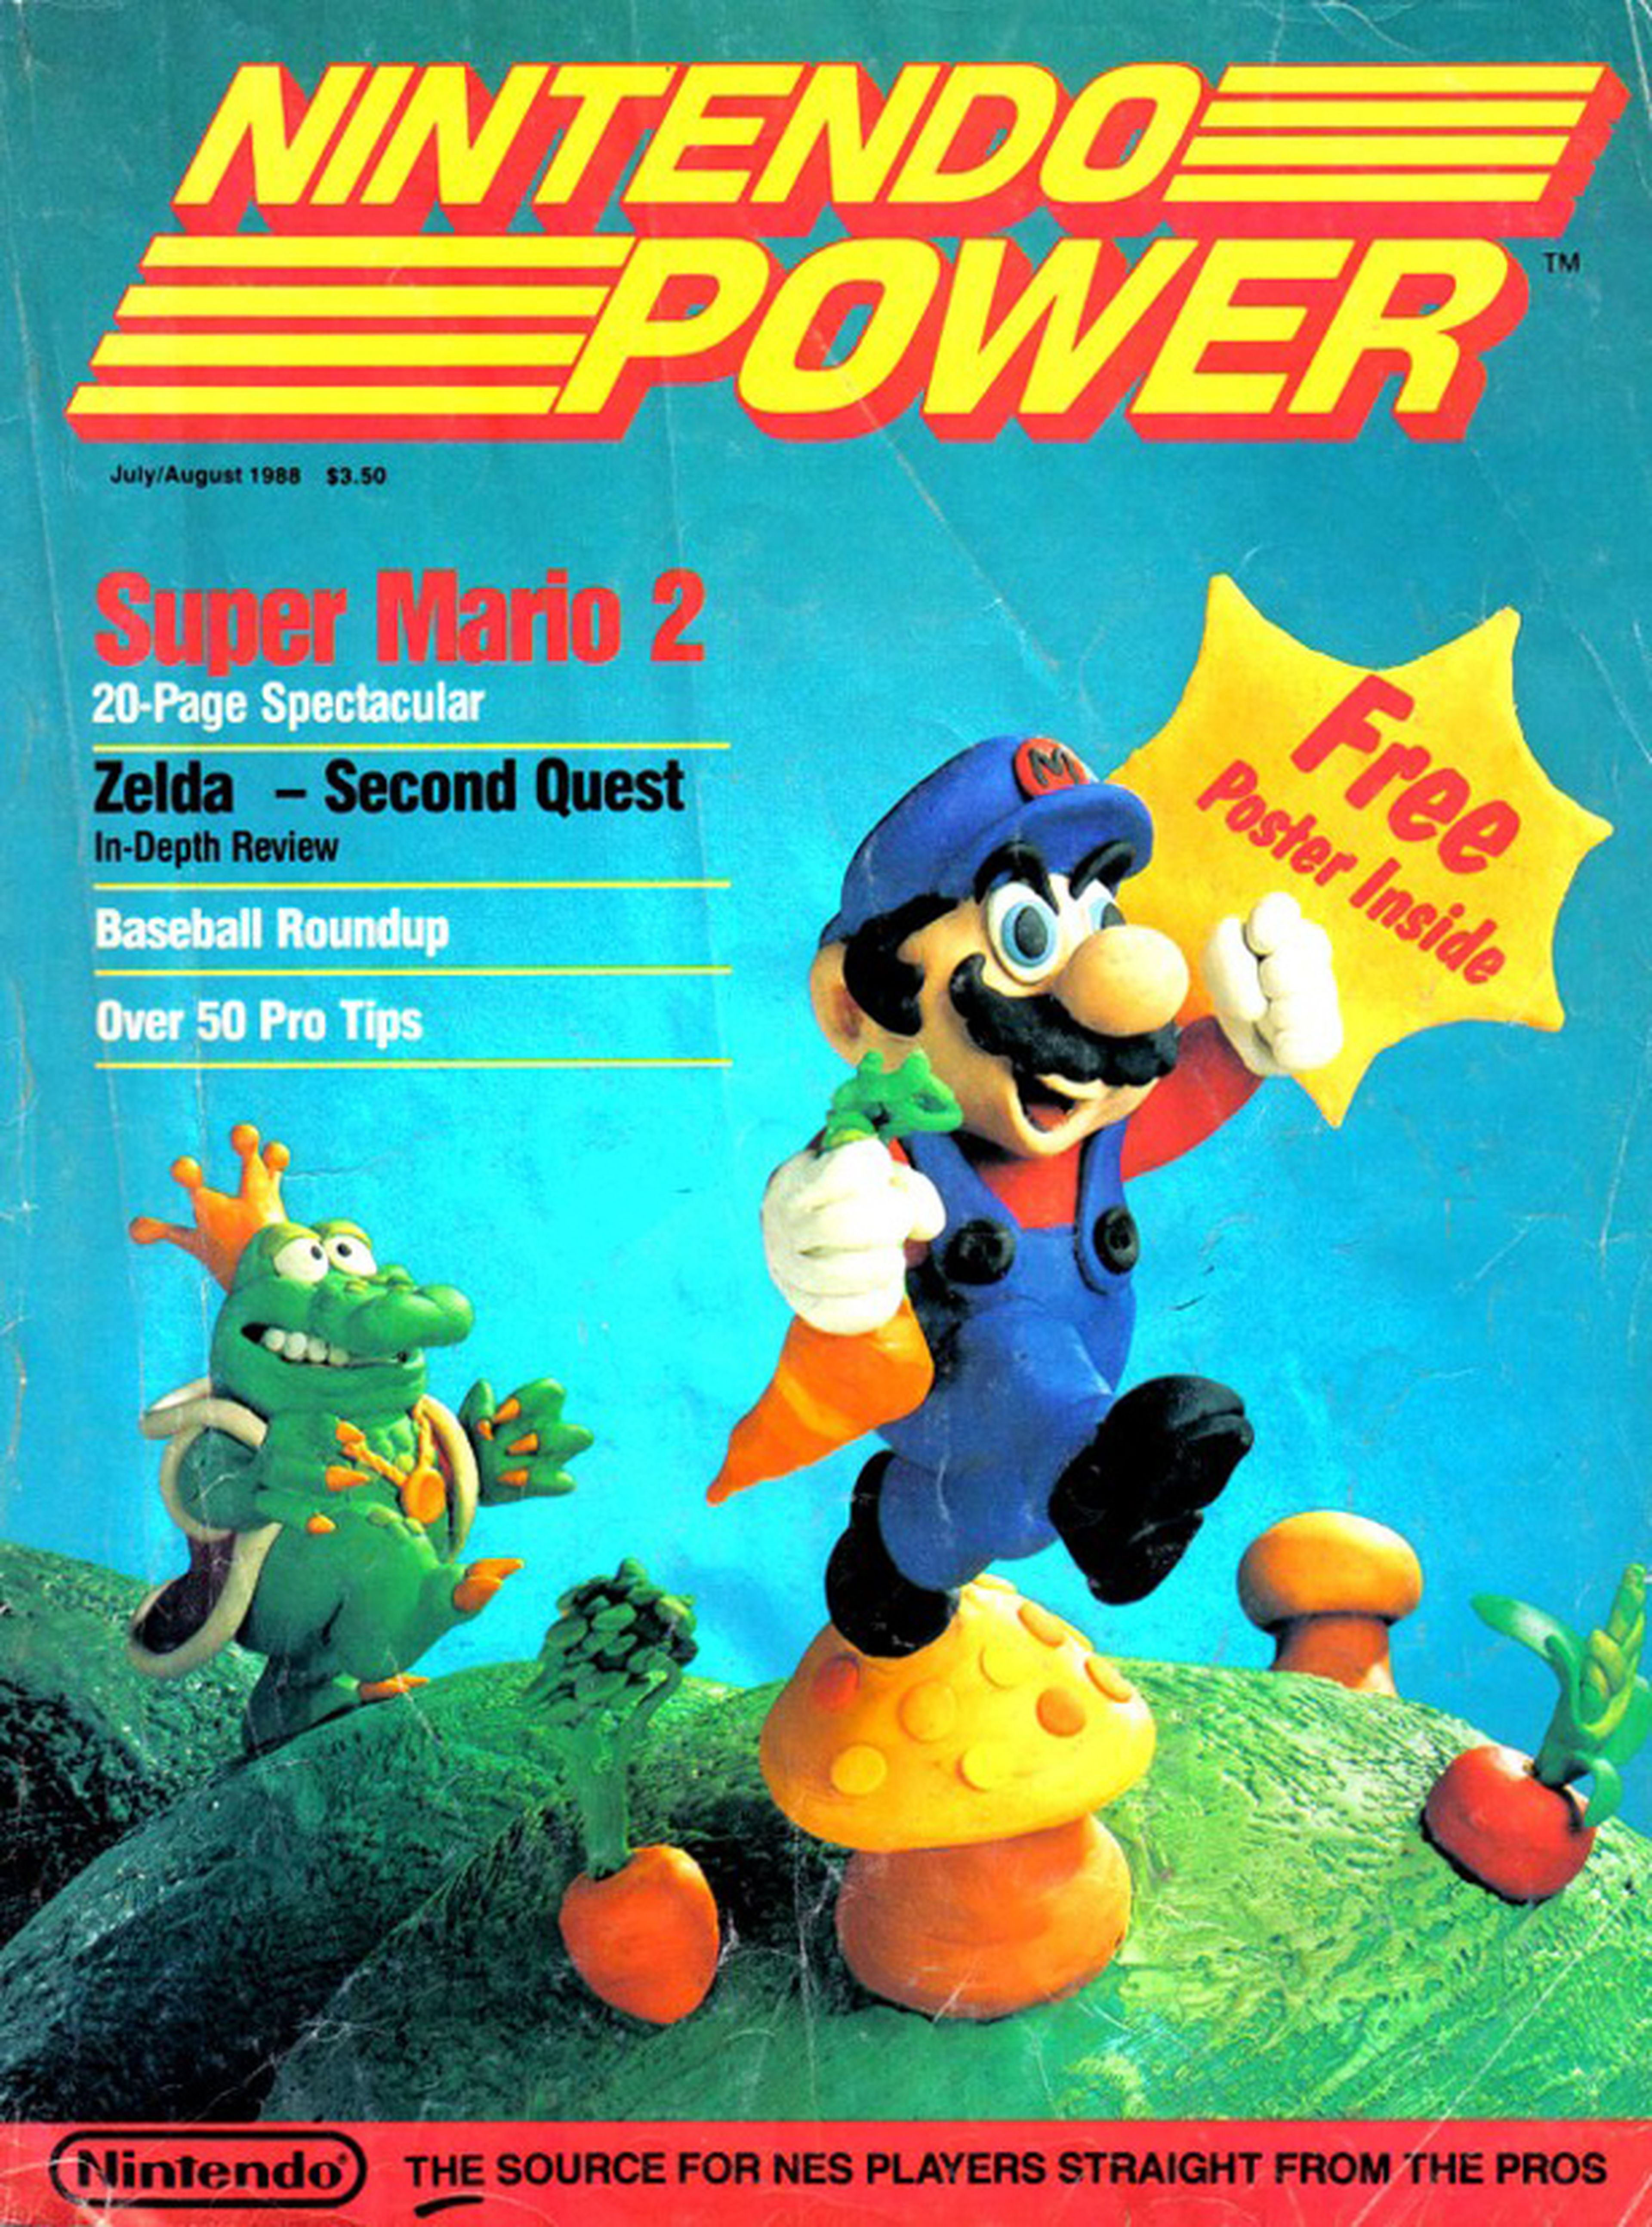 La revista Nintendo Power cerrará en diciembre